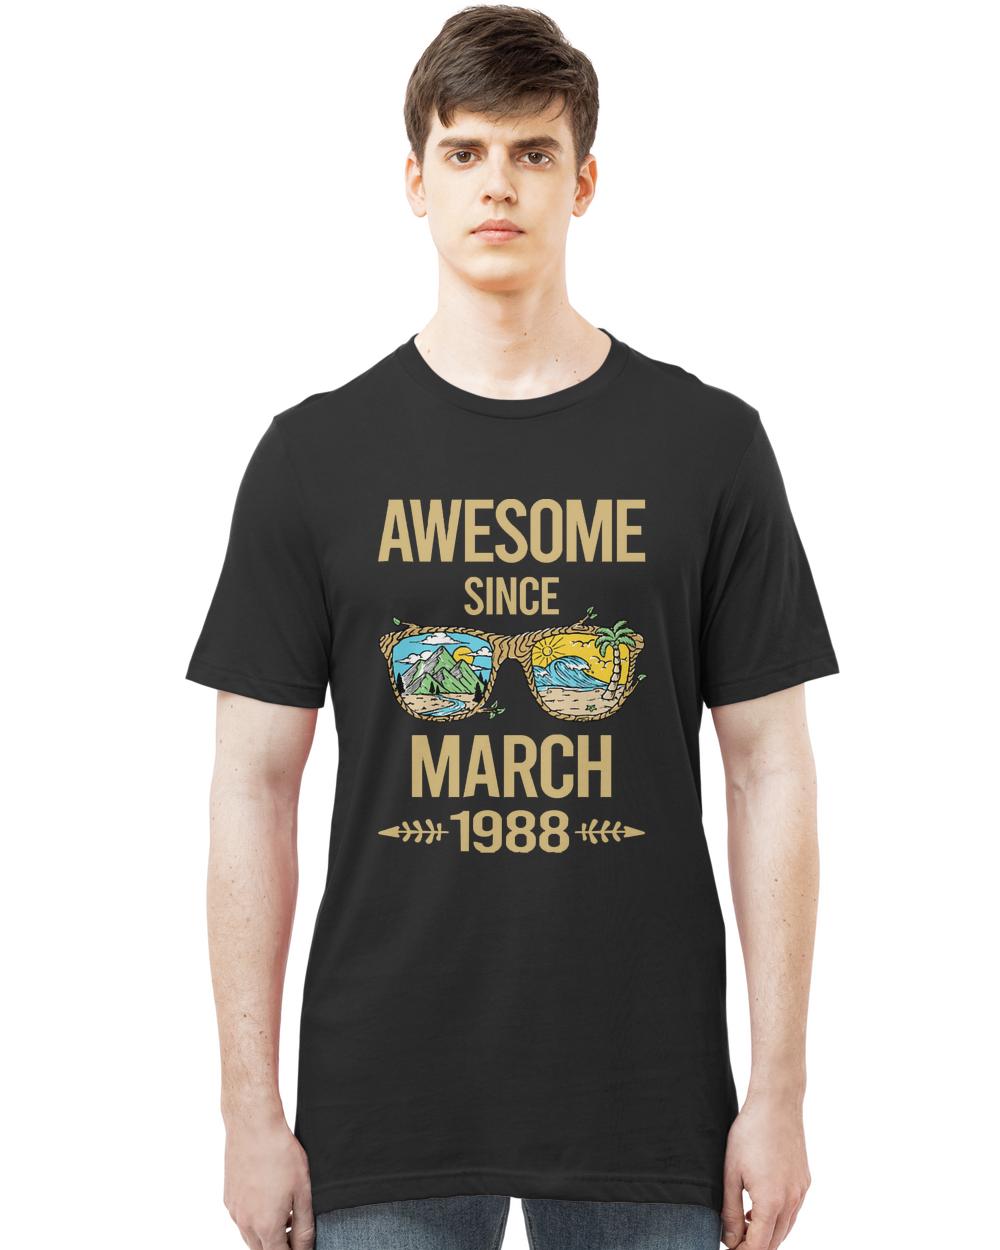 March 1988 T- Shirt Landscape Art - March 1988 T- Shirt